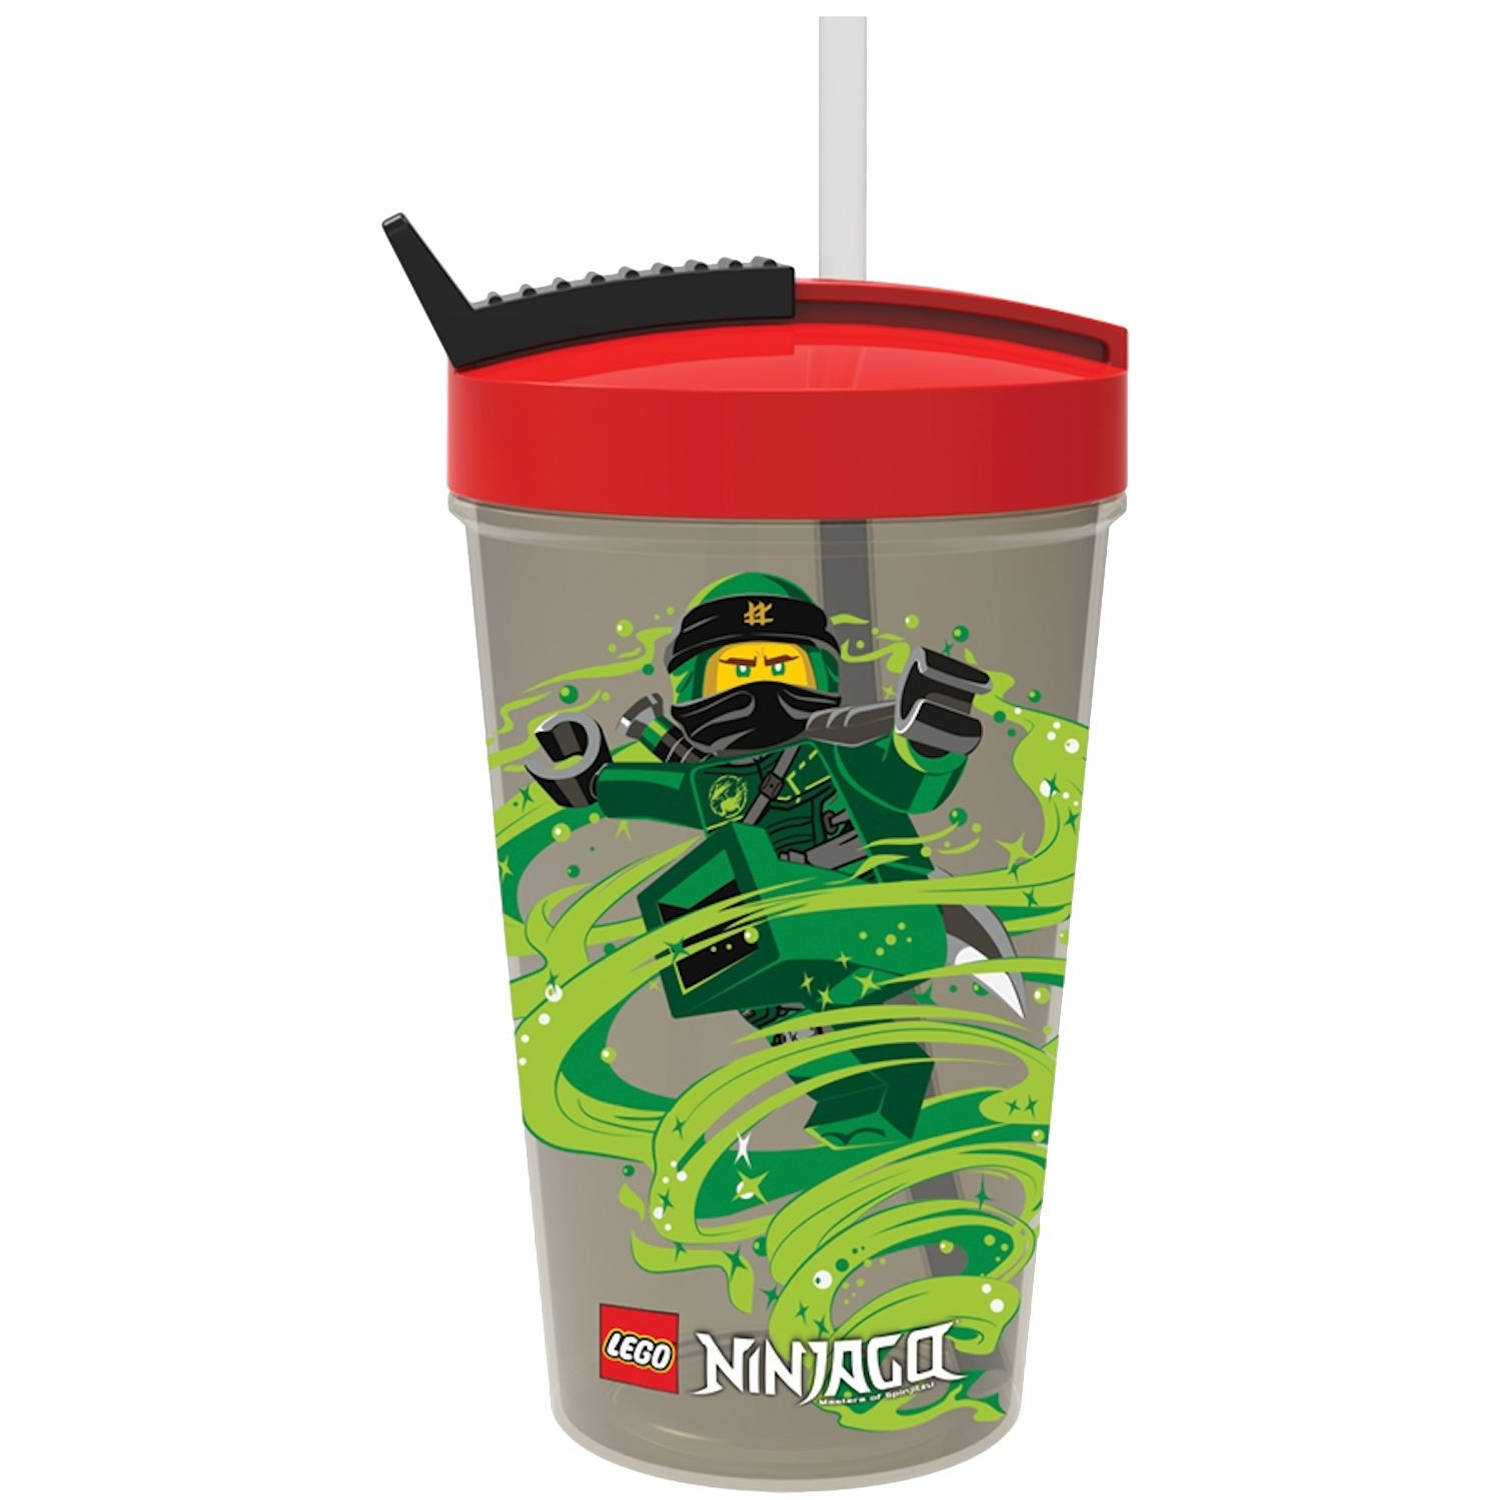 LEGO drinkbeker met rietje Ninjago groen/rood